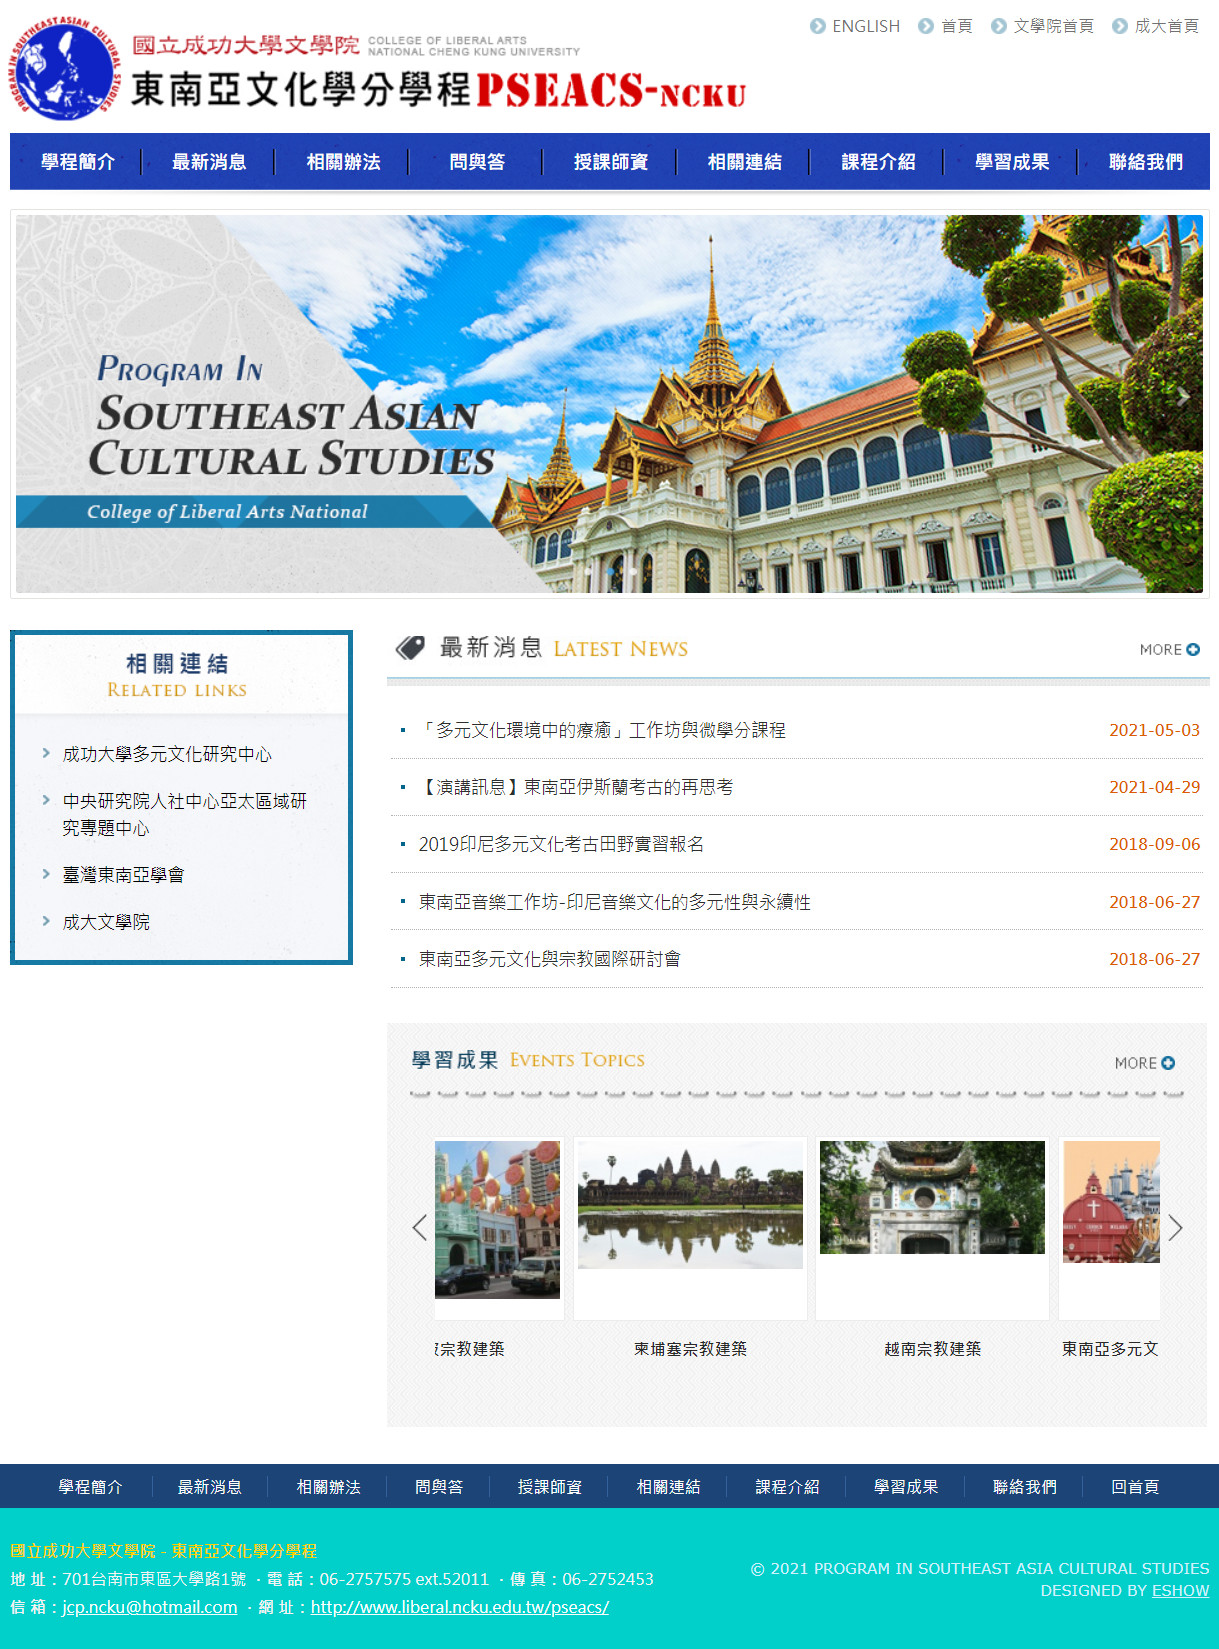 國立成功大學 東南亞文化學分學程 學校課程響應式網站設計
網站設計